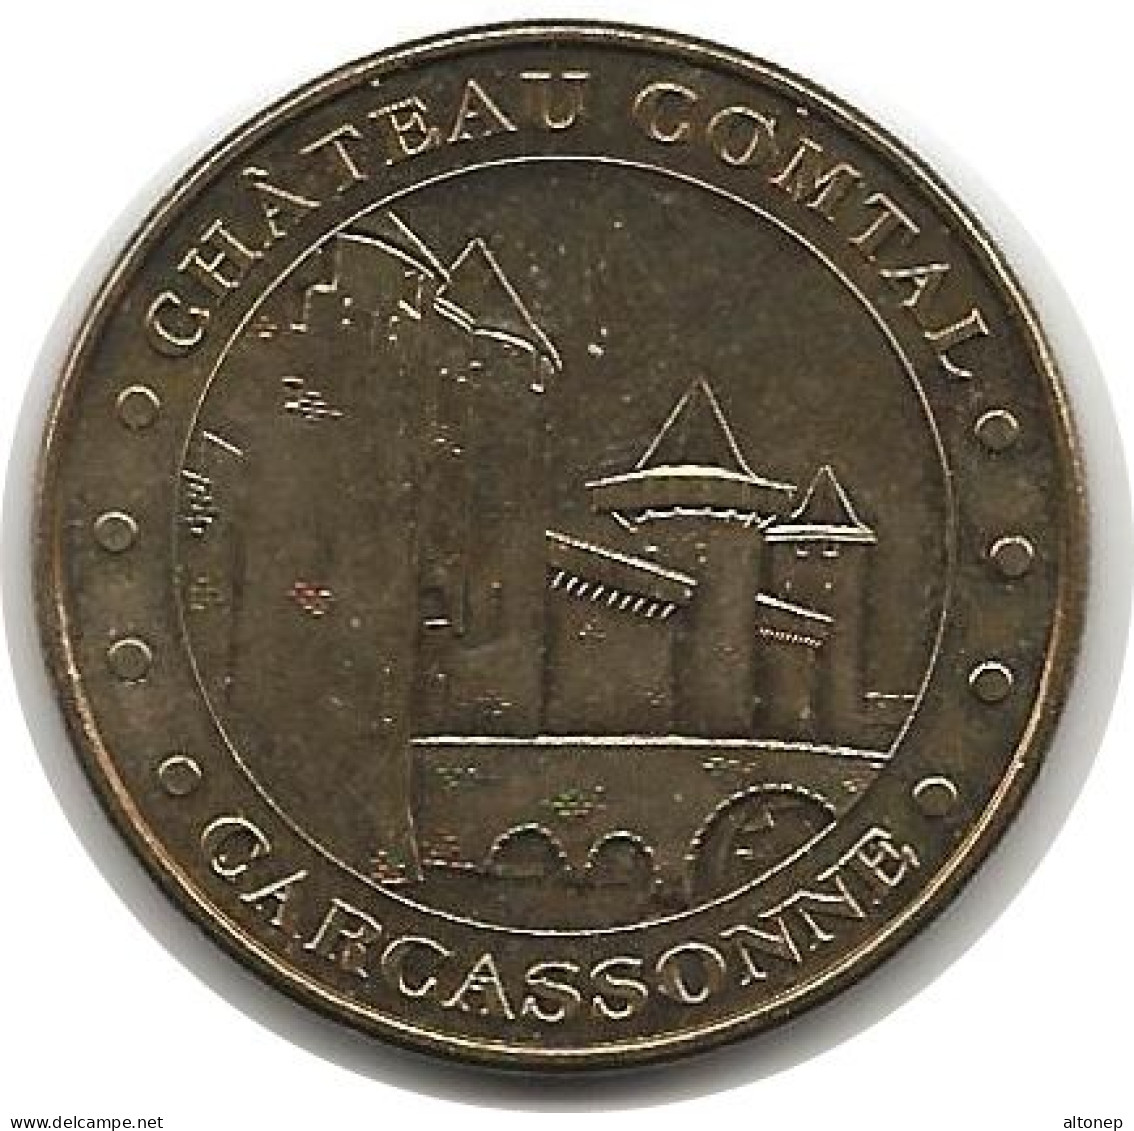 Carcassonne - 11 : Château Comtal (Monnaie De Paris, 2013) - 2013